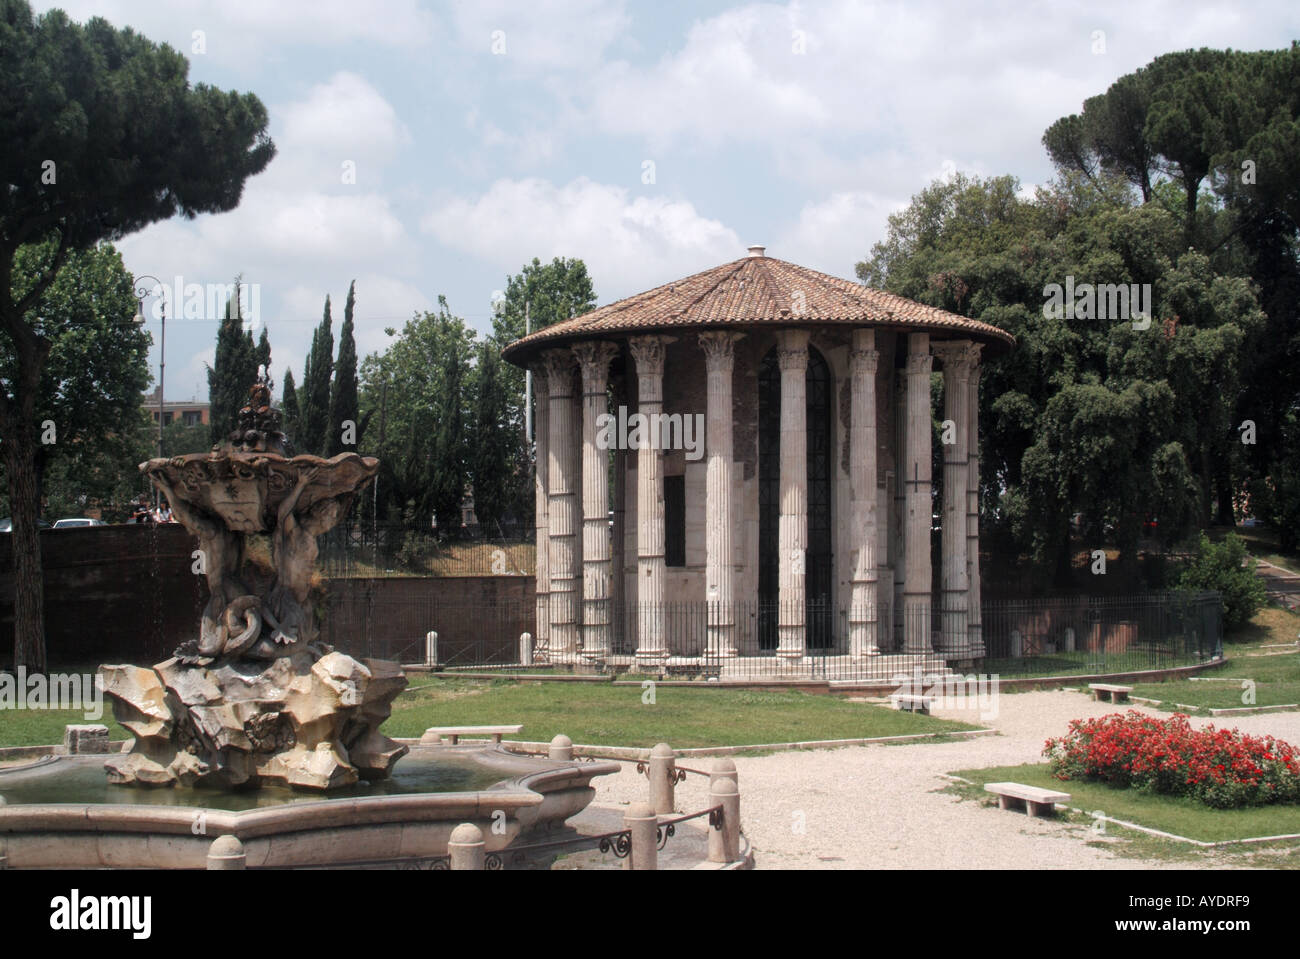 Tempel des Herkules Victor einen griechischen Tholos runde Marmor-tempel Design in Rom an der Piazza Bocca della Verità eine kolonnade von 20 korinthischen Säulen Stockfoto